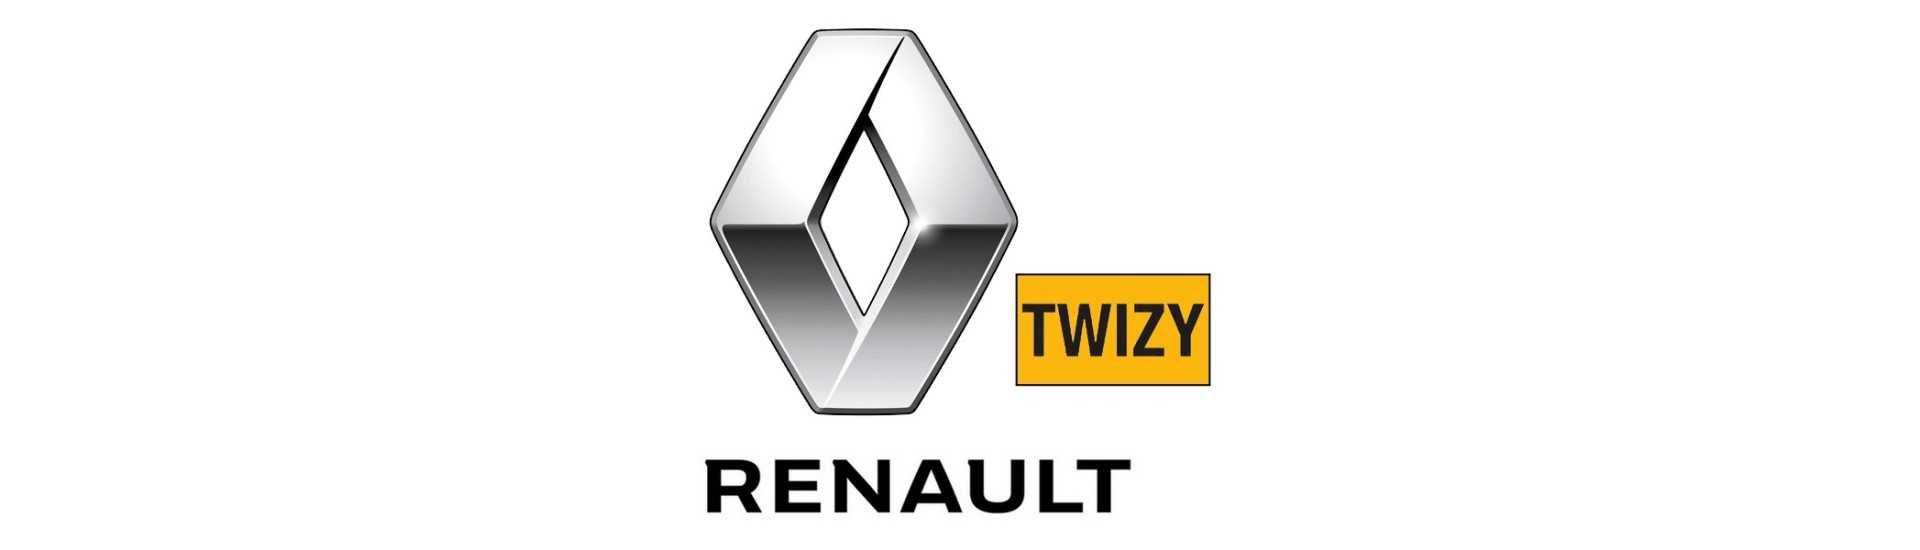 Pyöränmutteri parhaaseen hintaan ilman ajokorttia Renault Twizy